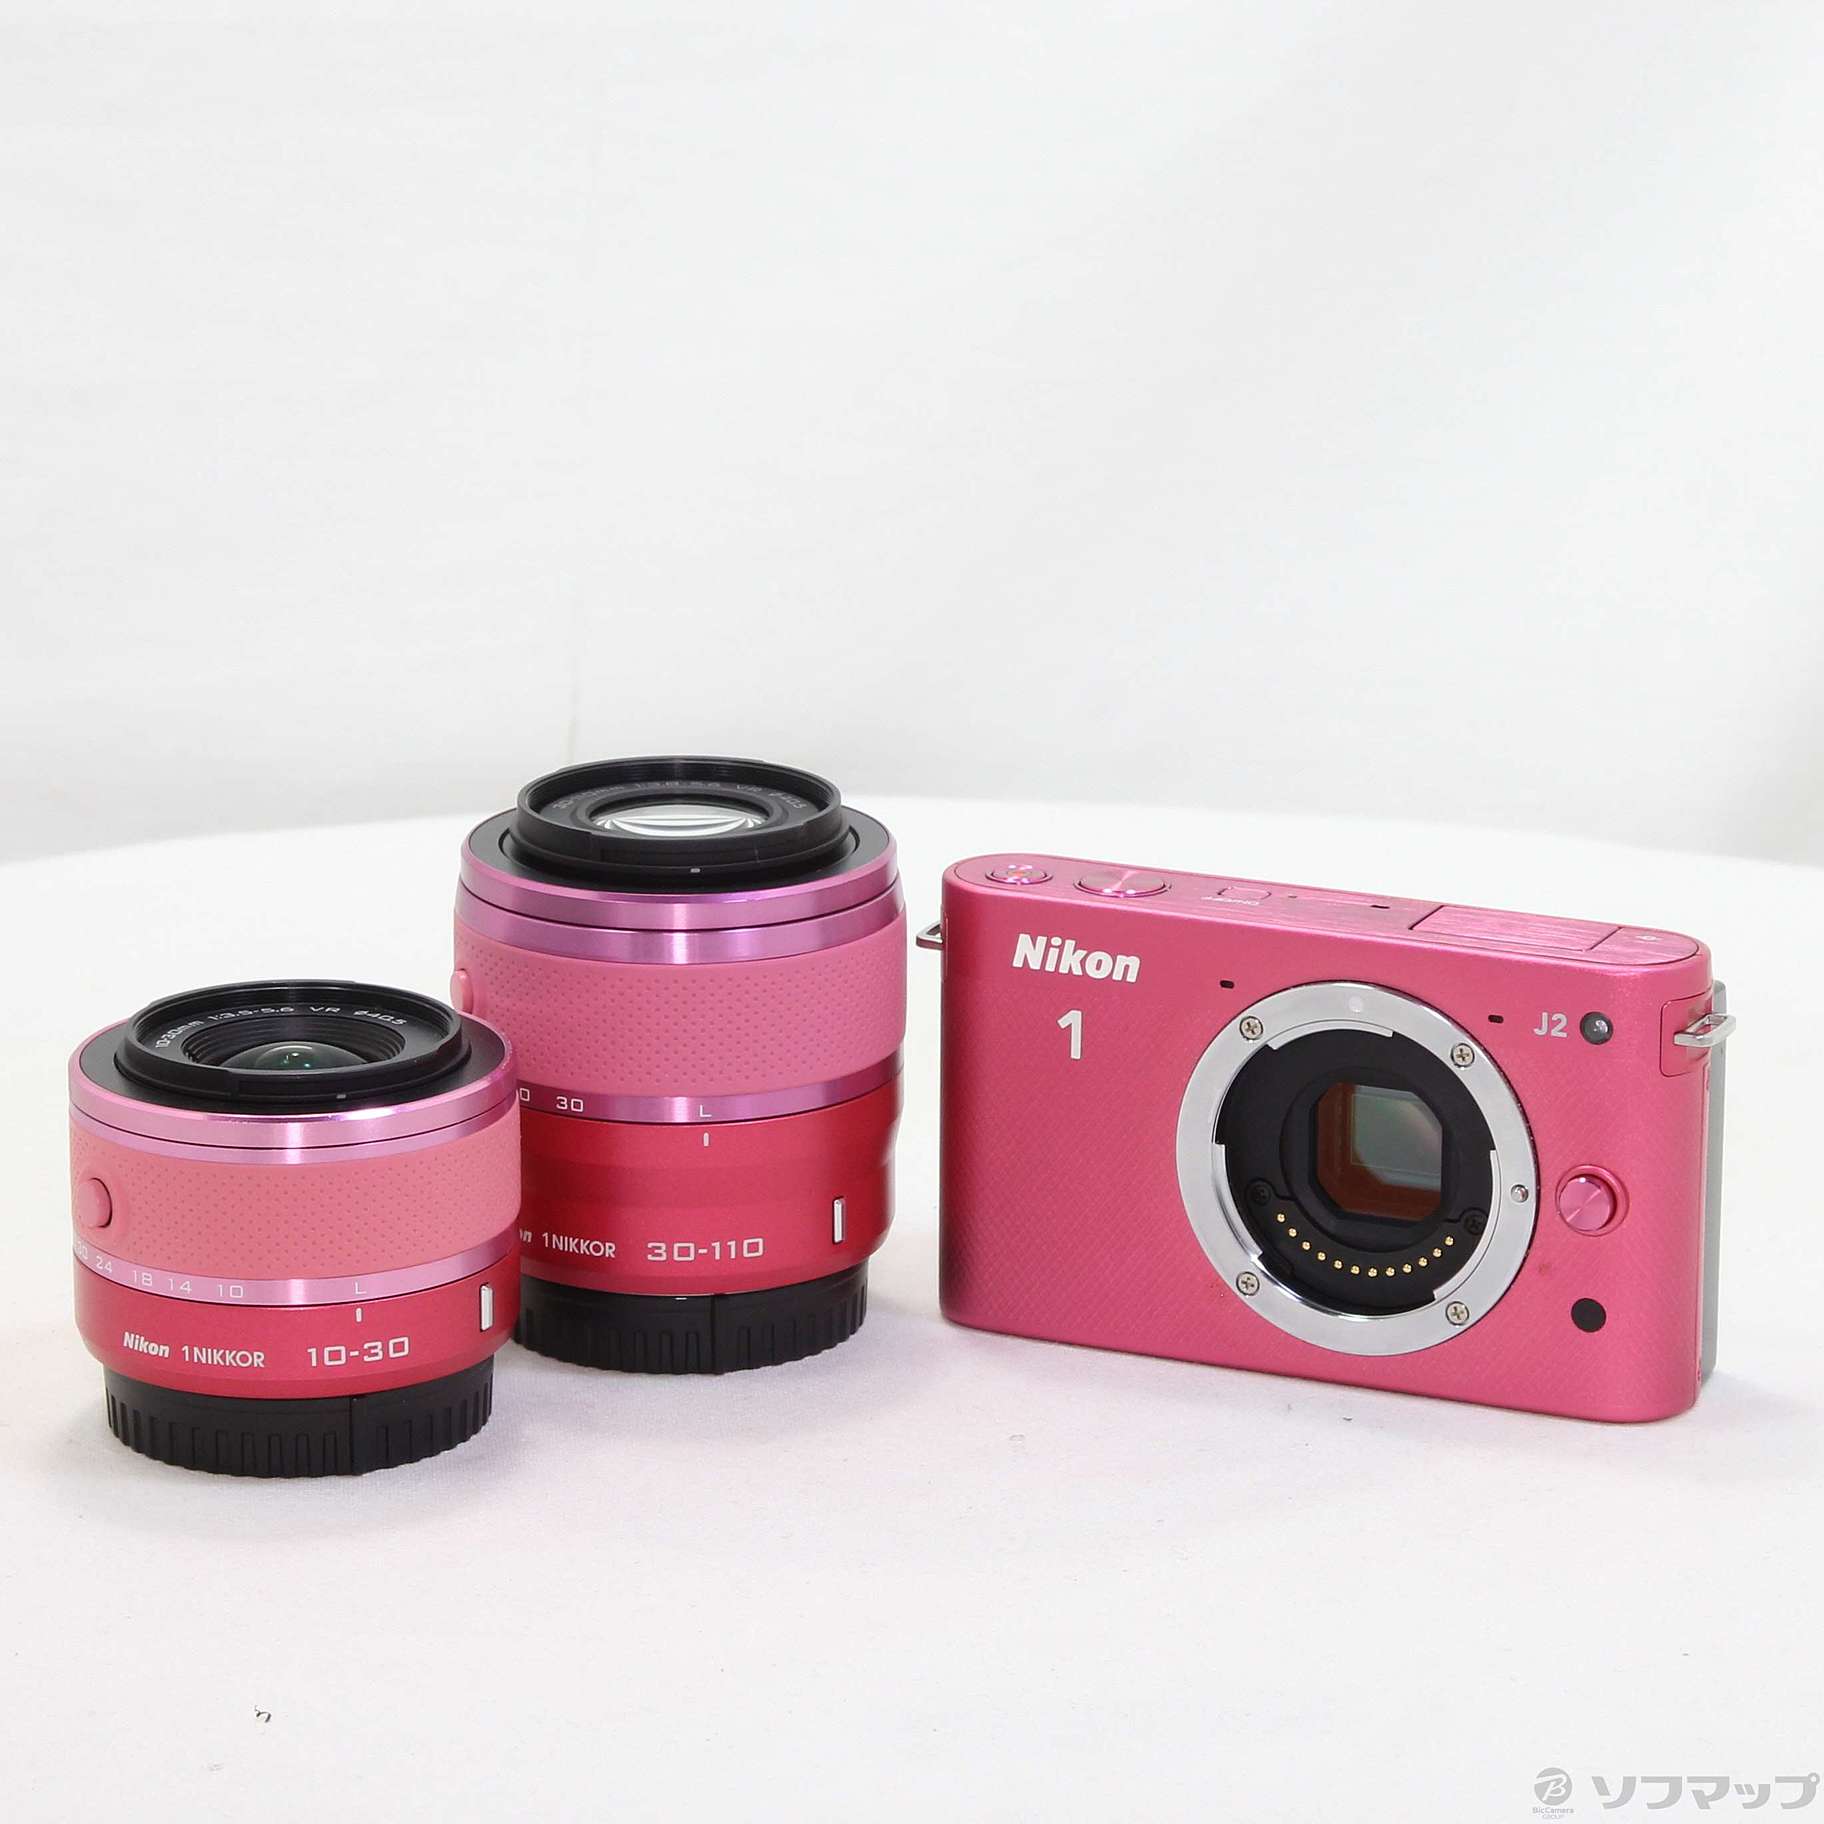 Nikon1 J2 ダブルズームキット ピンク